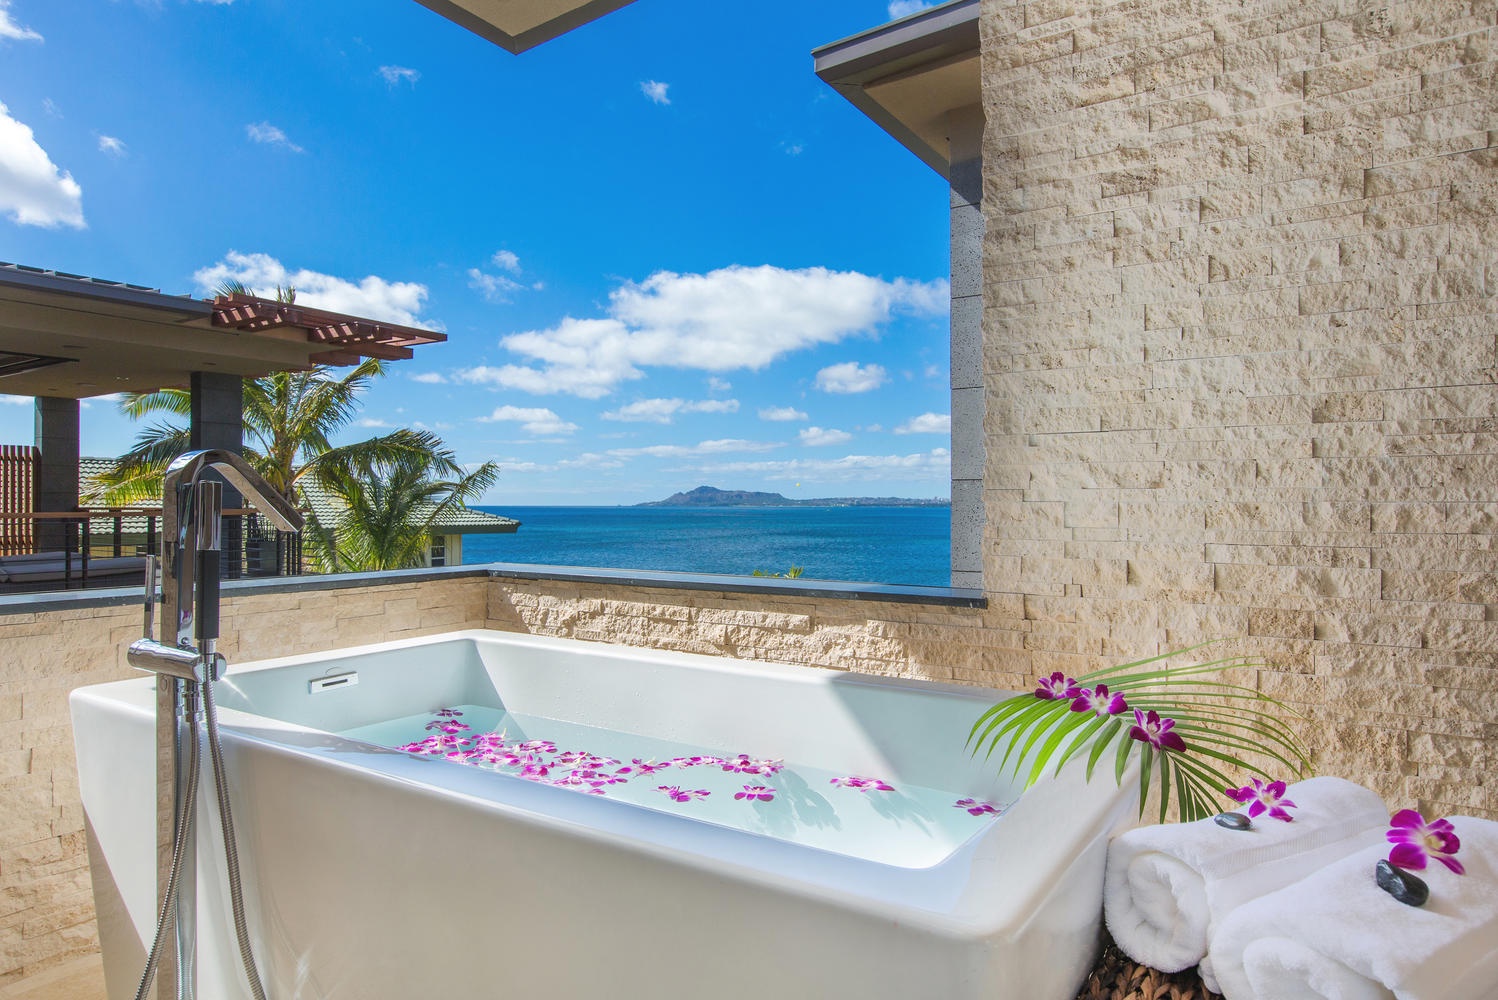 Honolulu Vacation Rentals, Ocean House - Primary bathroom tub.